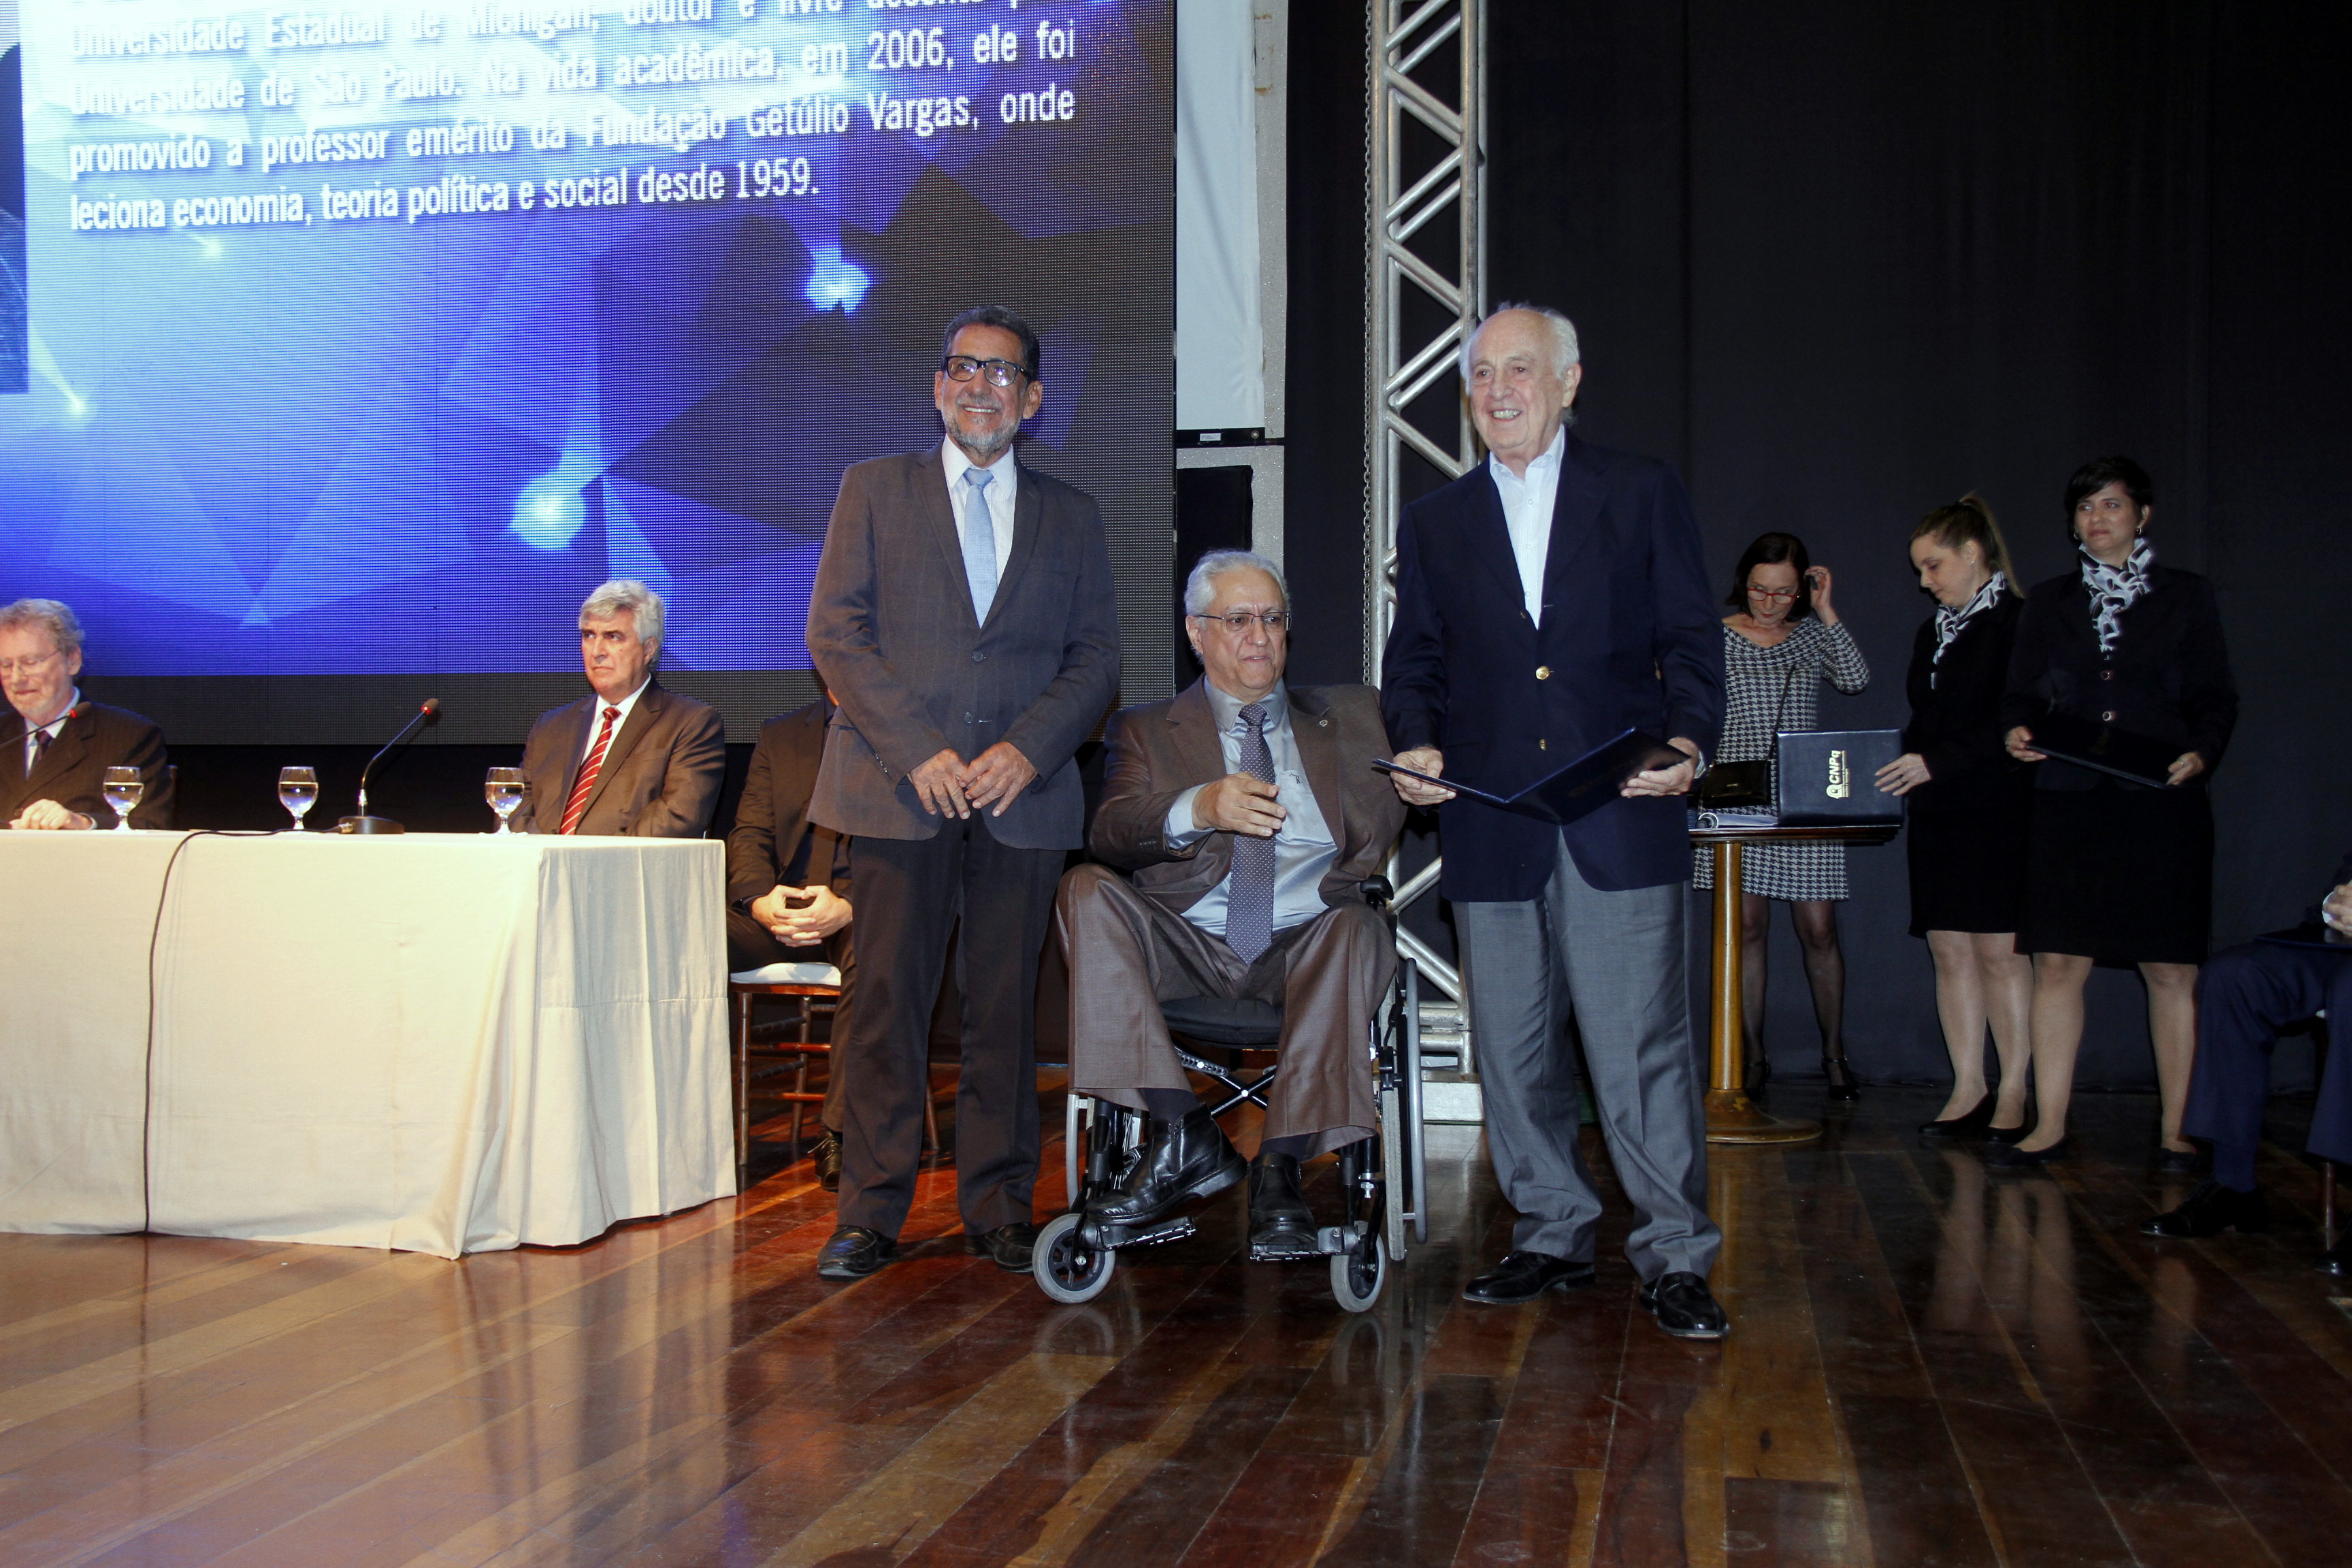  Cerimônia de premiação Prêmio Almirante Álvaro Alberto